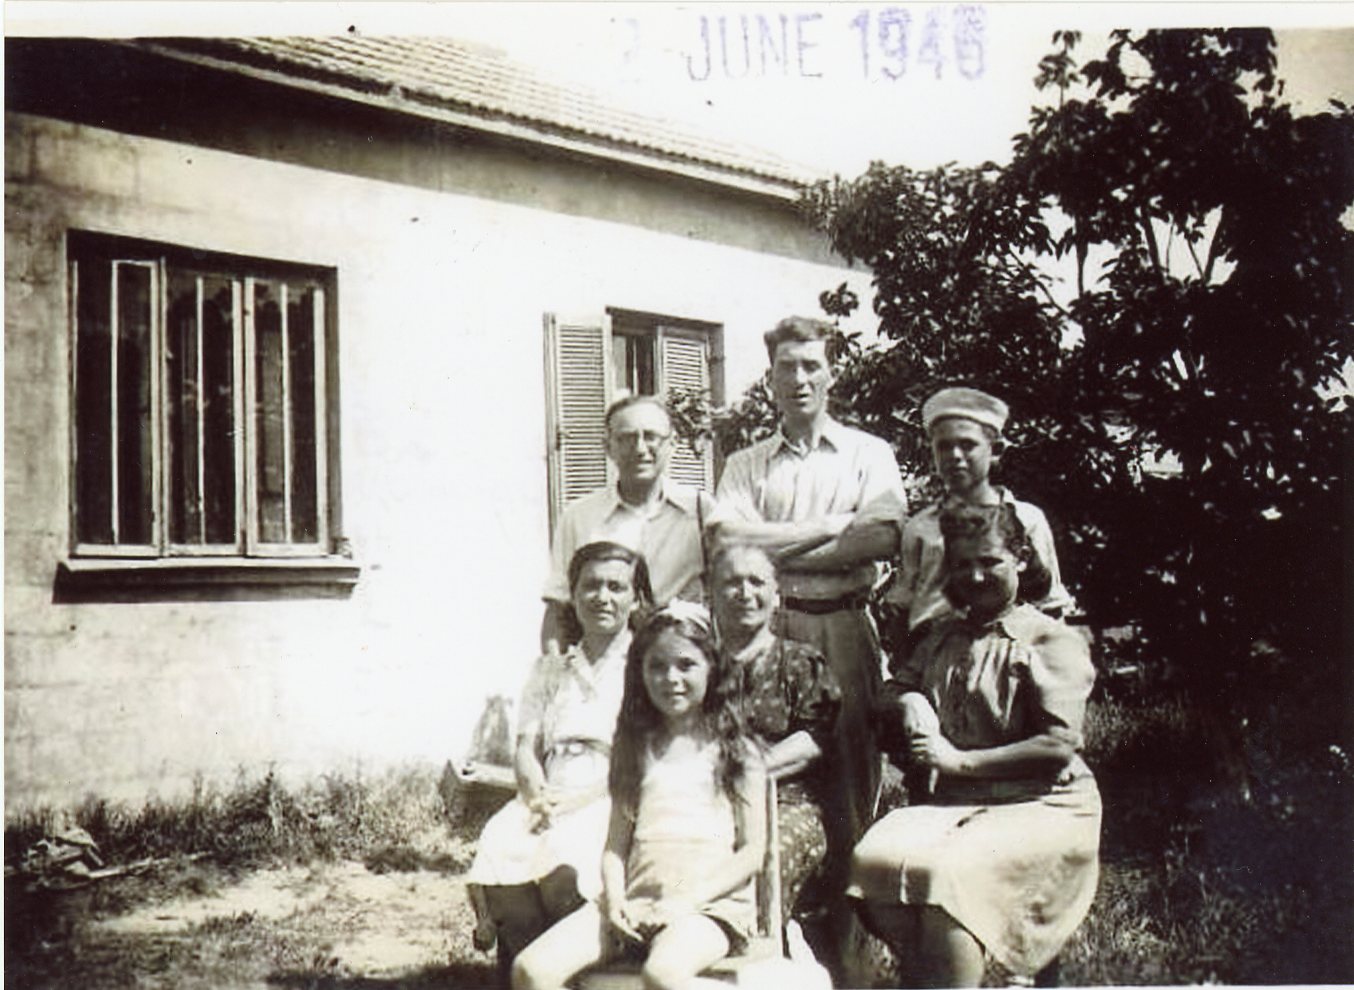 1946 רעננה. עומדים משמאל שמואל קלדור, מיכאל אלטשולר, אברהם אלטשולר. יושבות משמאל טובה אלטשולר, יפה אייכל, רחל קלדור. הילדה בקדמת התמונה אורה אלטשולר. על רקע הבית ברחוב הרצל